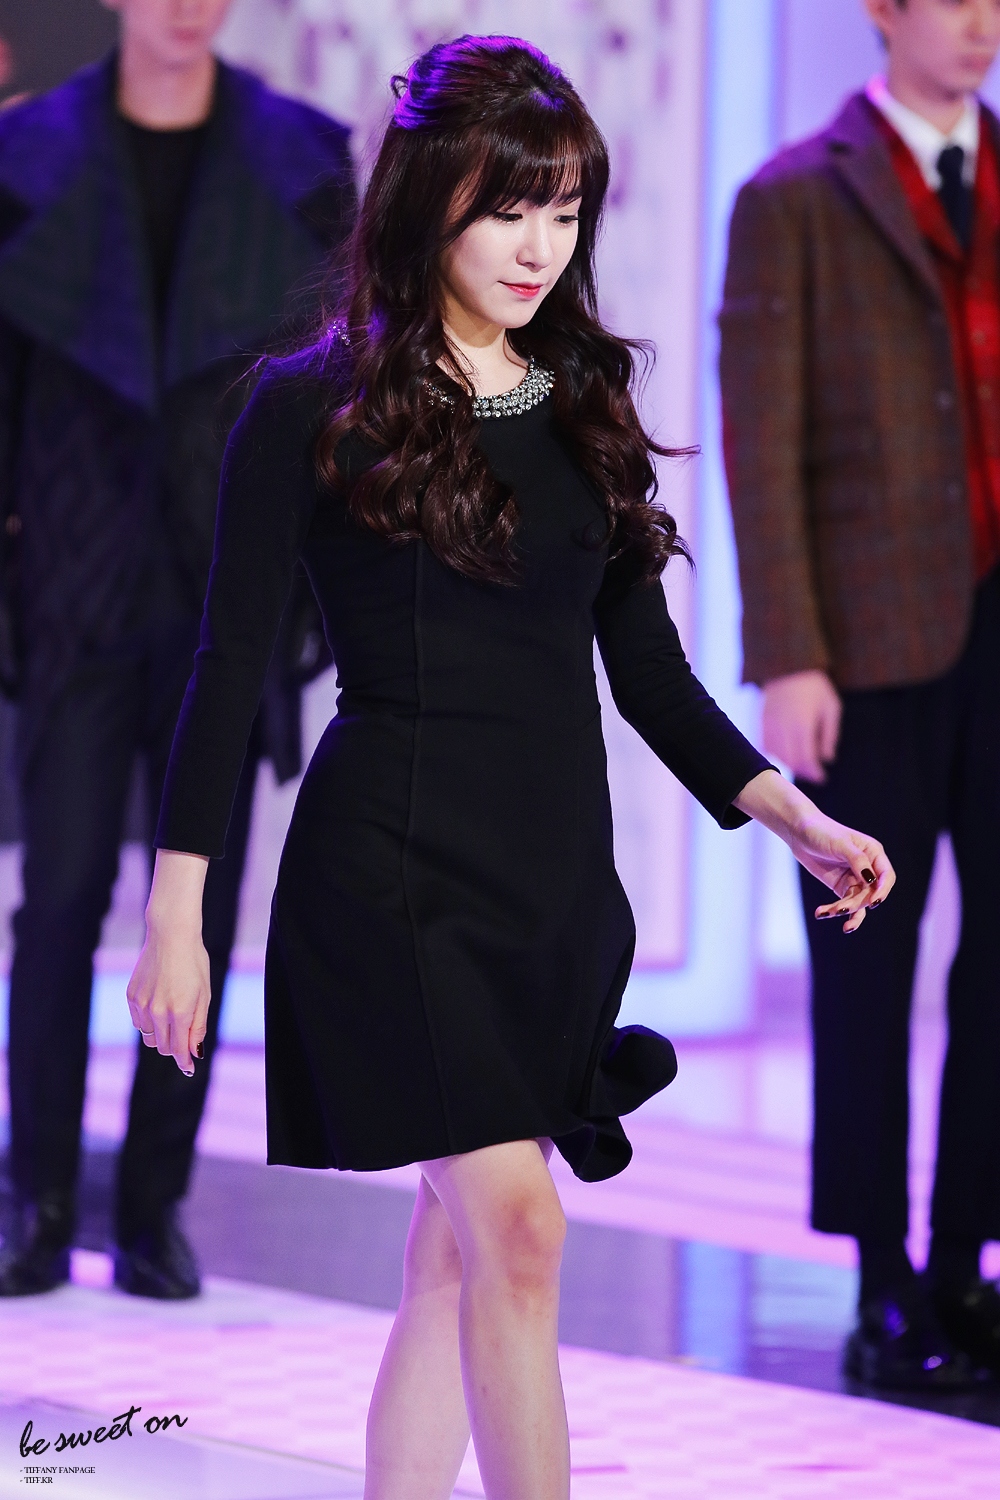 [PIC][16-10-2013]Tiffany xuất hiện tại buổi họp báo ra mắt chương trình "Fashion King Korea" vào trưa nay 257C6F4B526225613A17F5